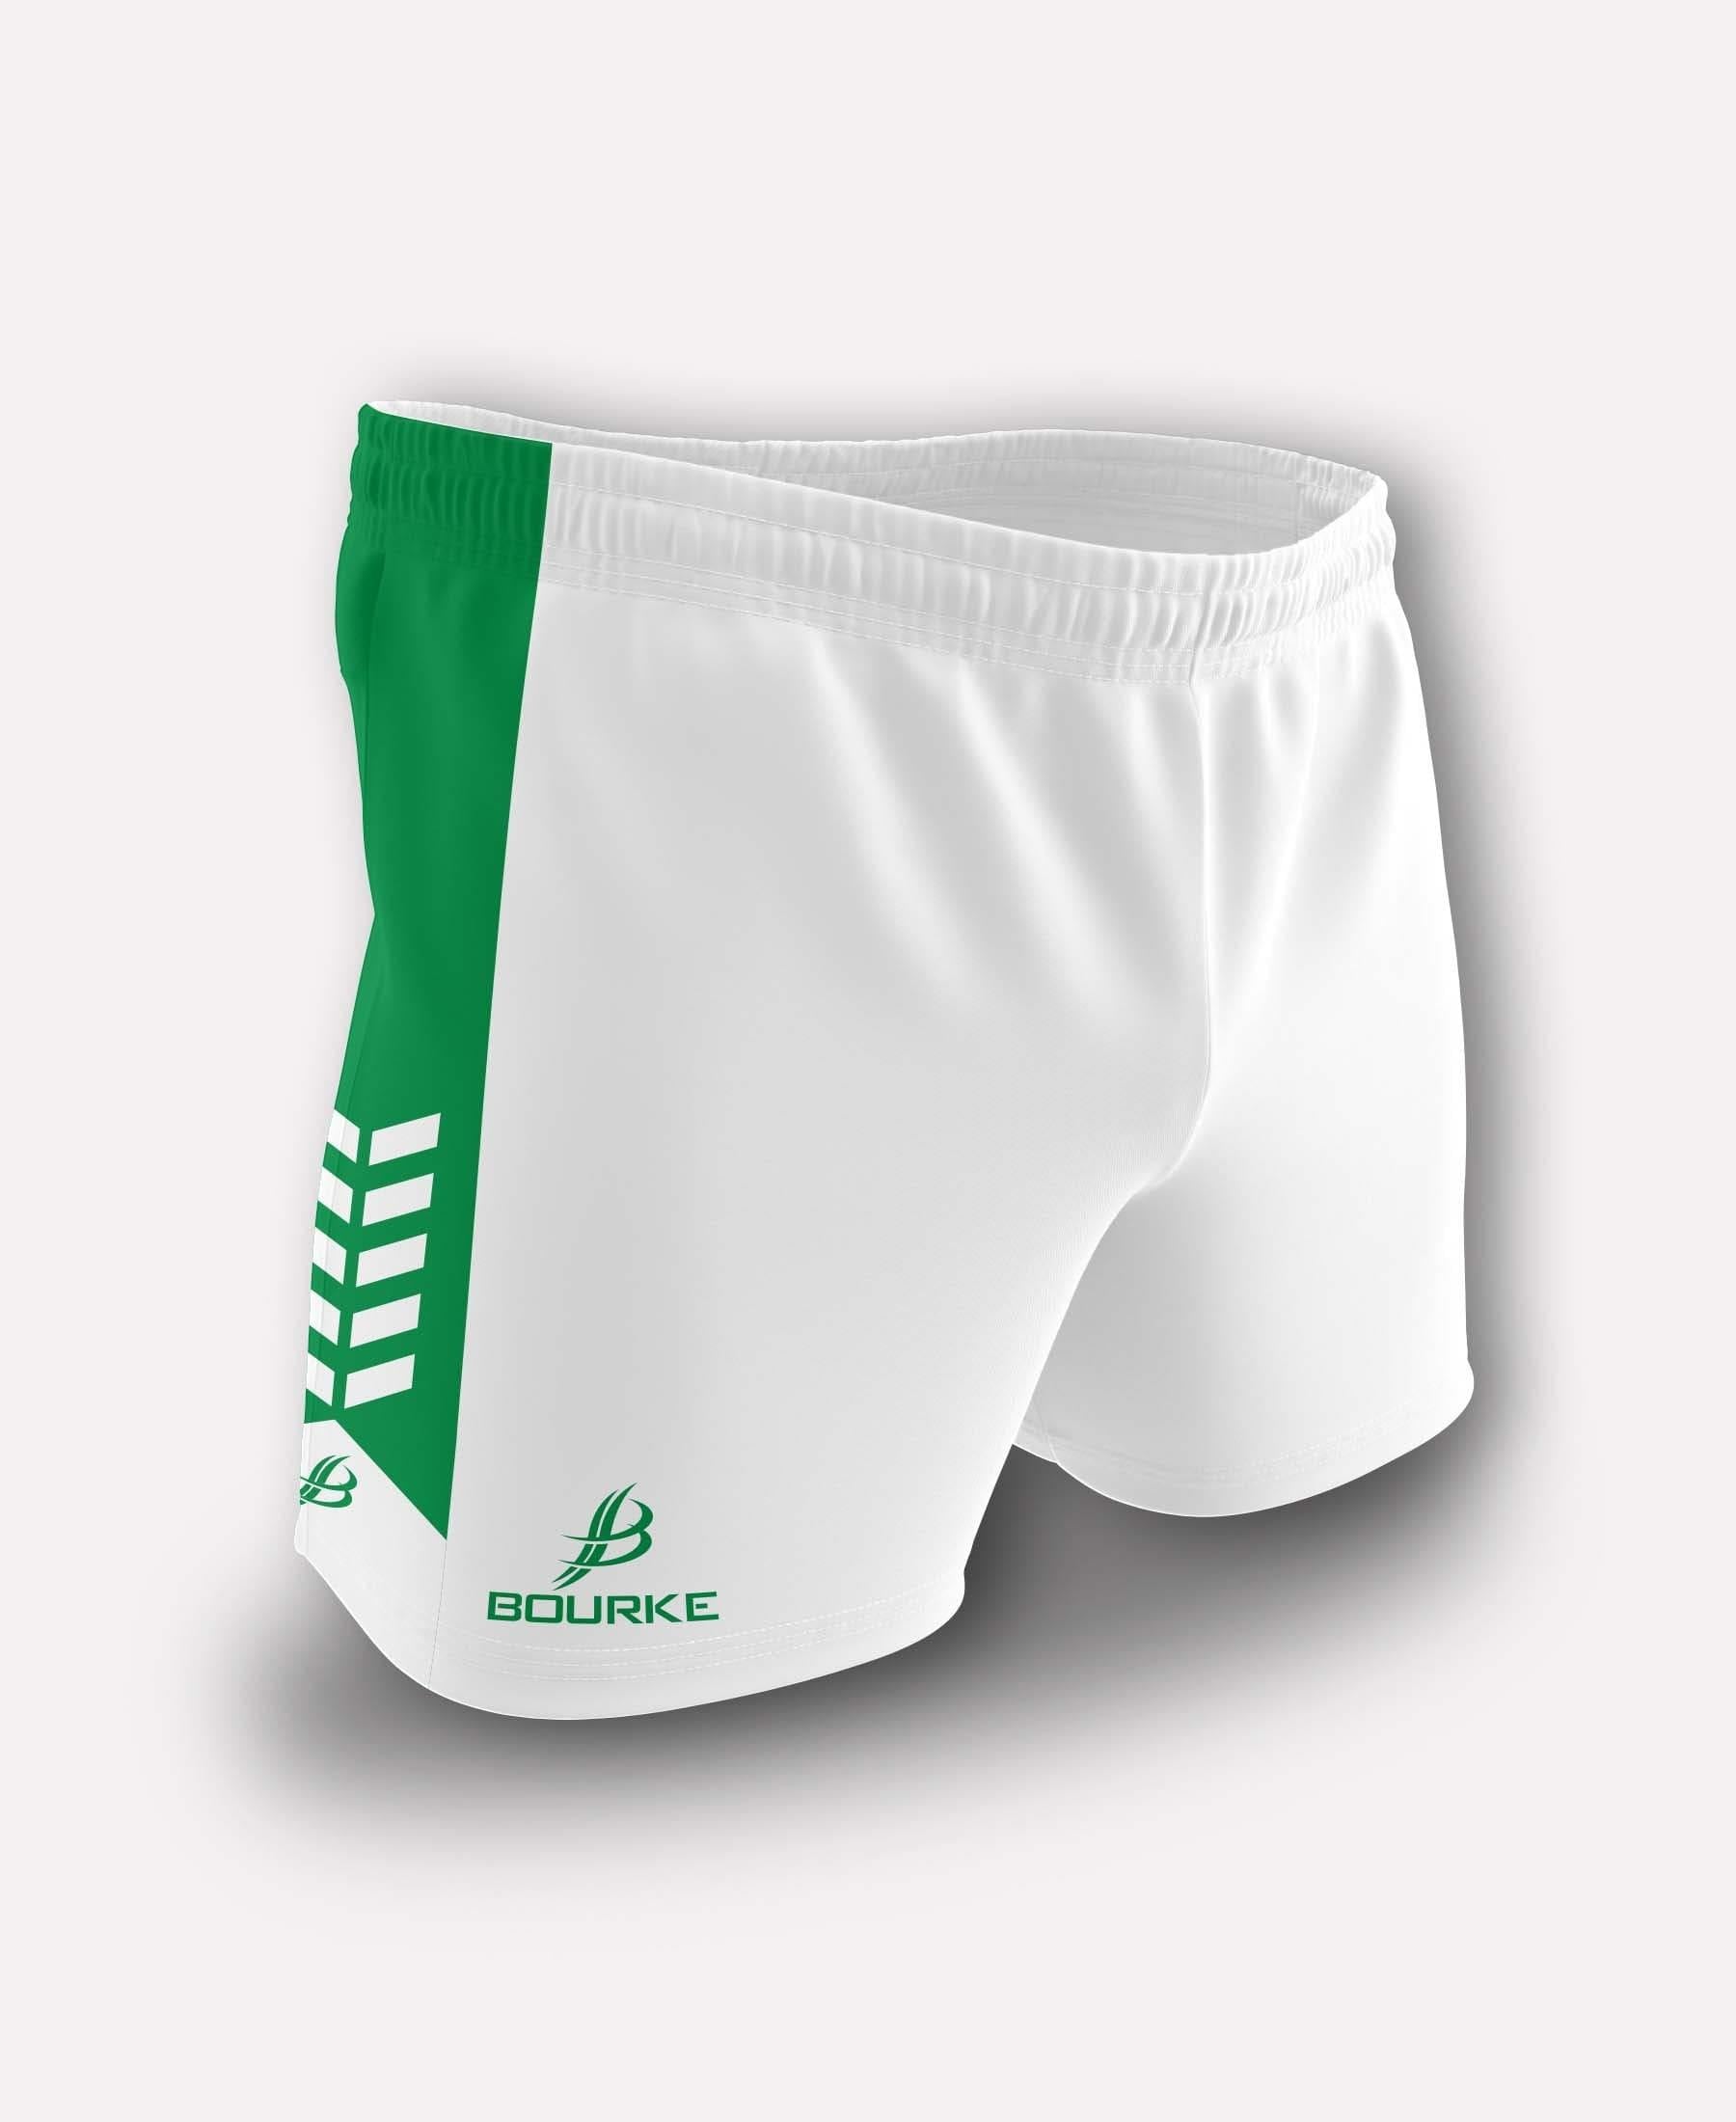 Chevron Kids Shorts (White/Green) - Bourke Sports Limited